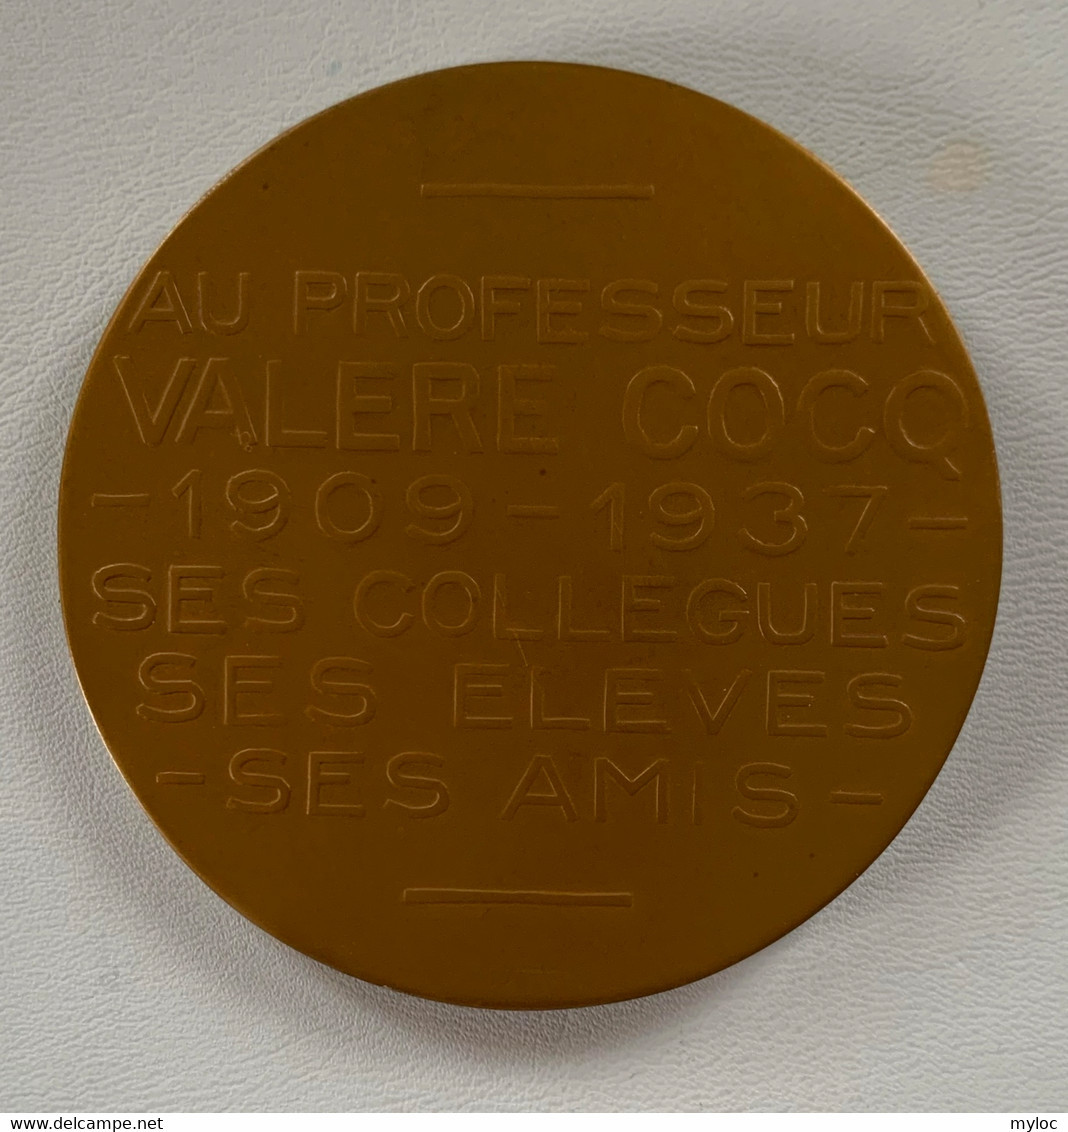 Médaille Bronze. Valère Cocq. Au Professeur Valère Cocq 1909-1934. Ses Collègues, Ses élèves, Ses Amis. A. Bonnetain - Professionals / Firms